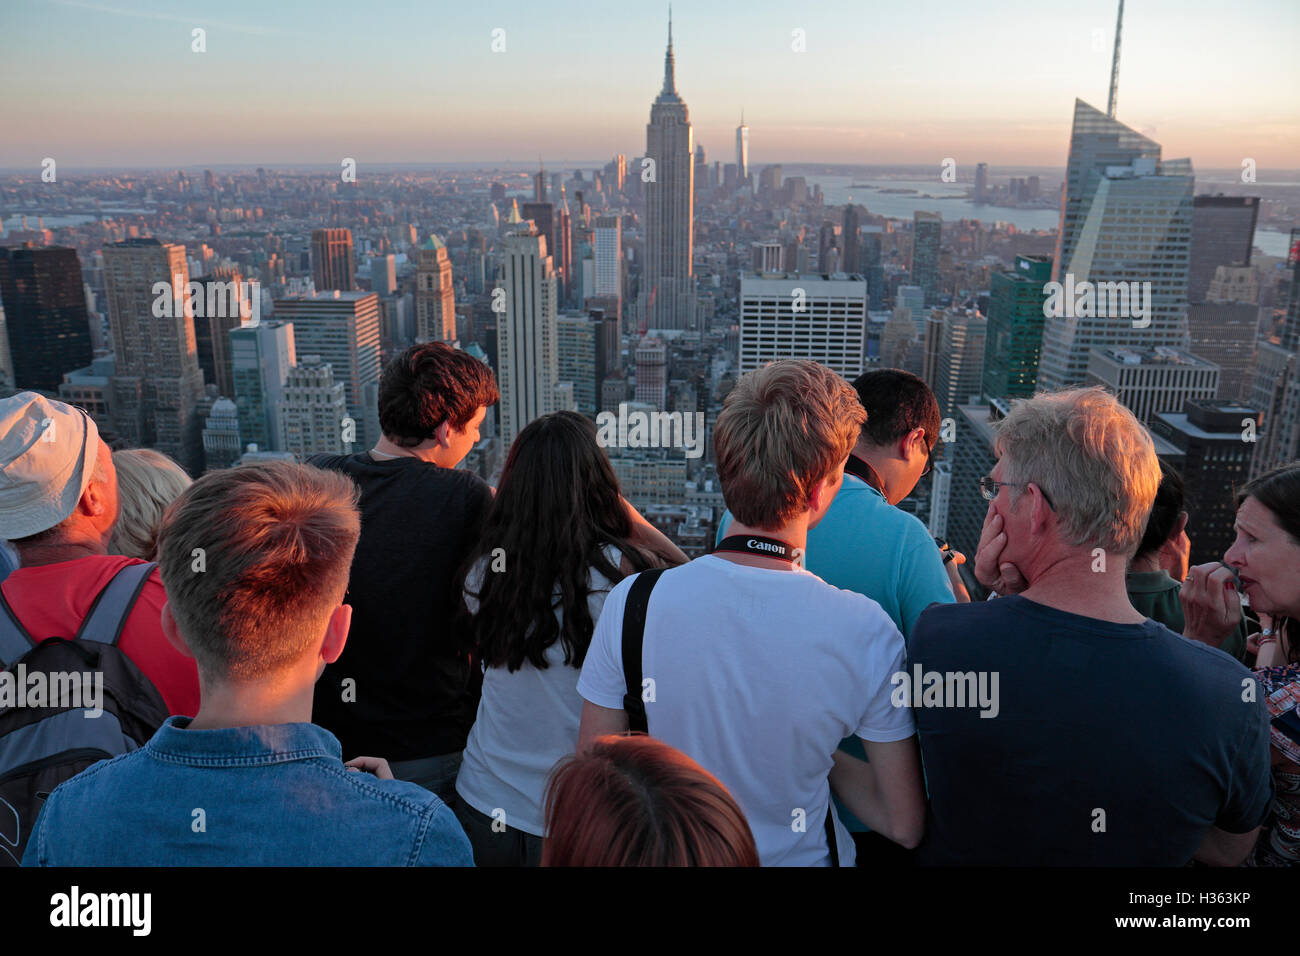 Touristen auf "Top of the Rock" mit Blick auf das Empire State Building in Manhattan, New York City, New York, Vereinigte Staaten. Stockfoto